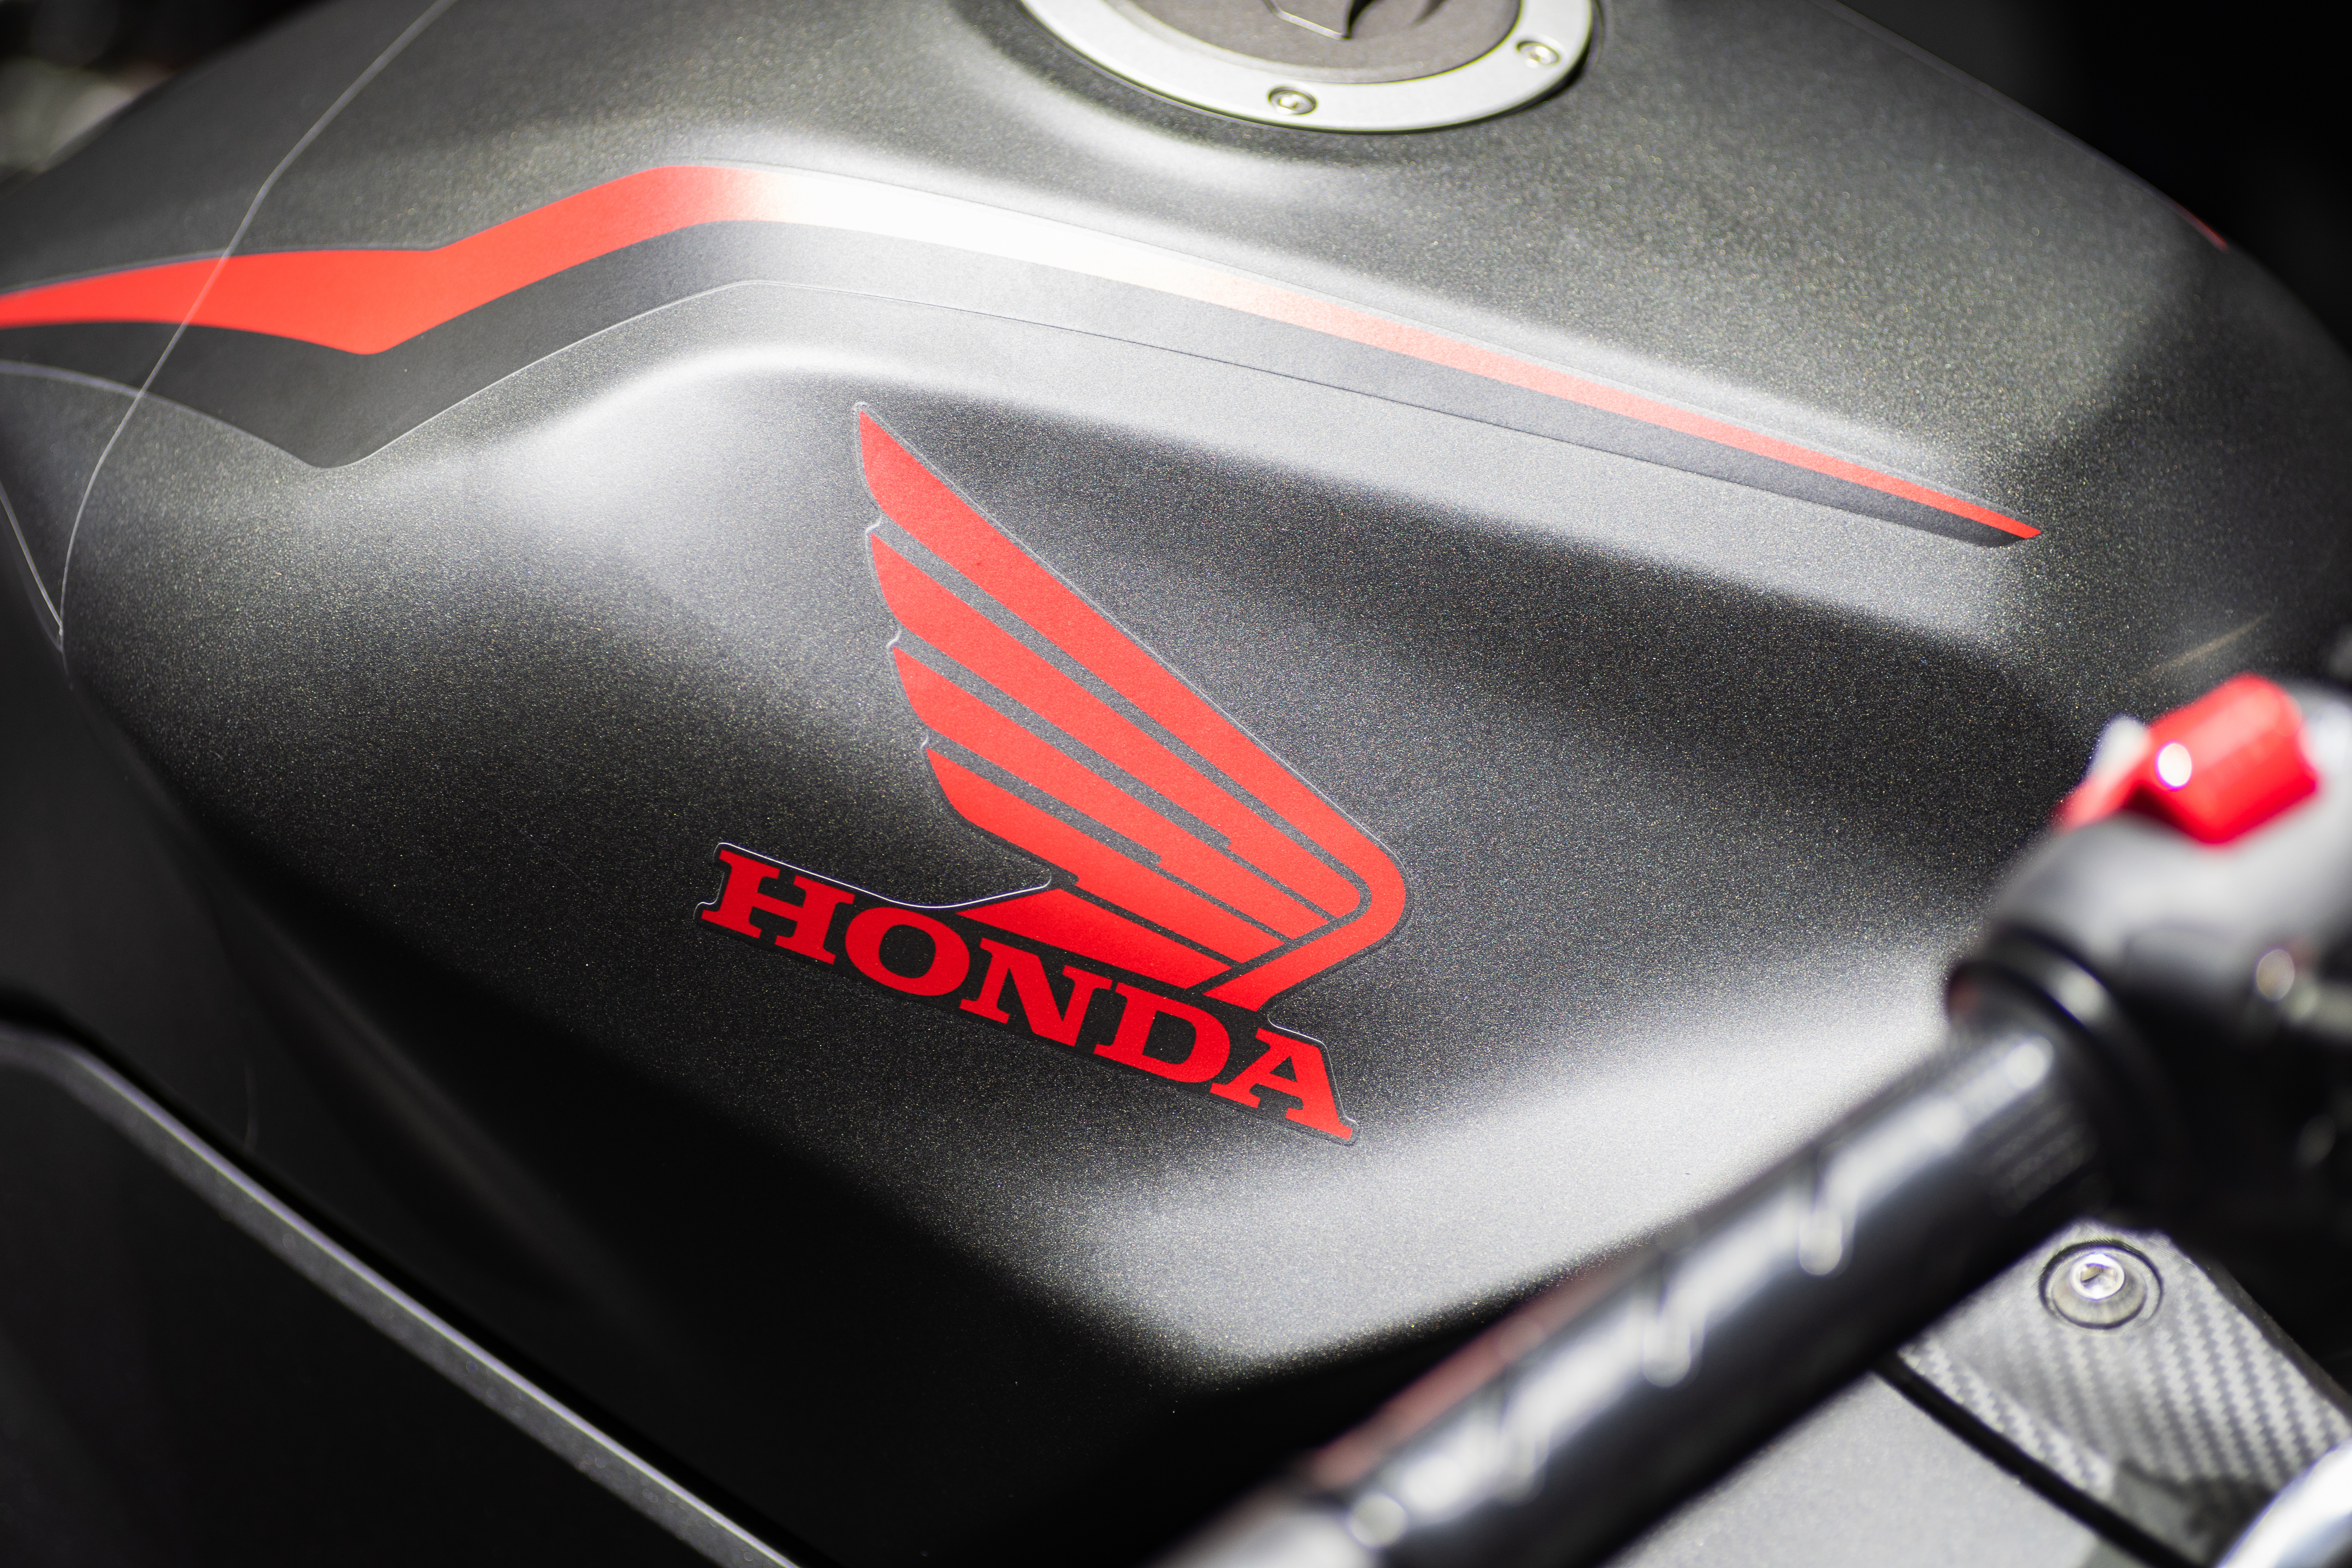 Mas, afinal, quais os prós e contras de comprar uma moto seminova Honda? Fonte: AdobeStock.